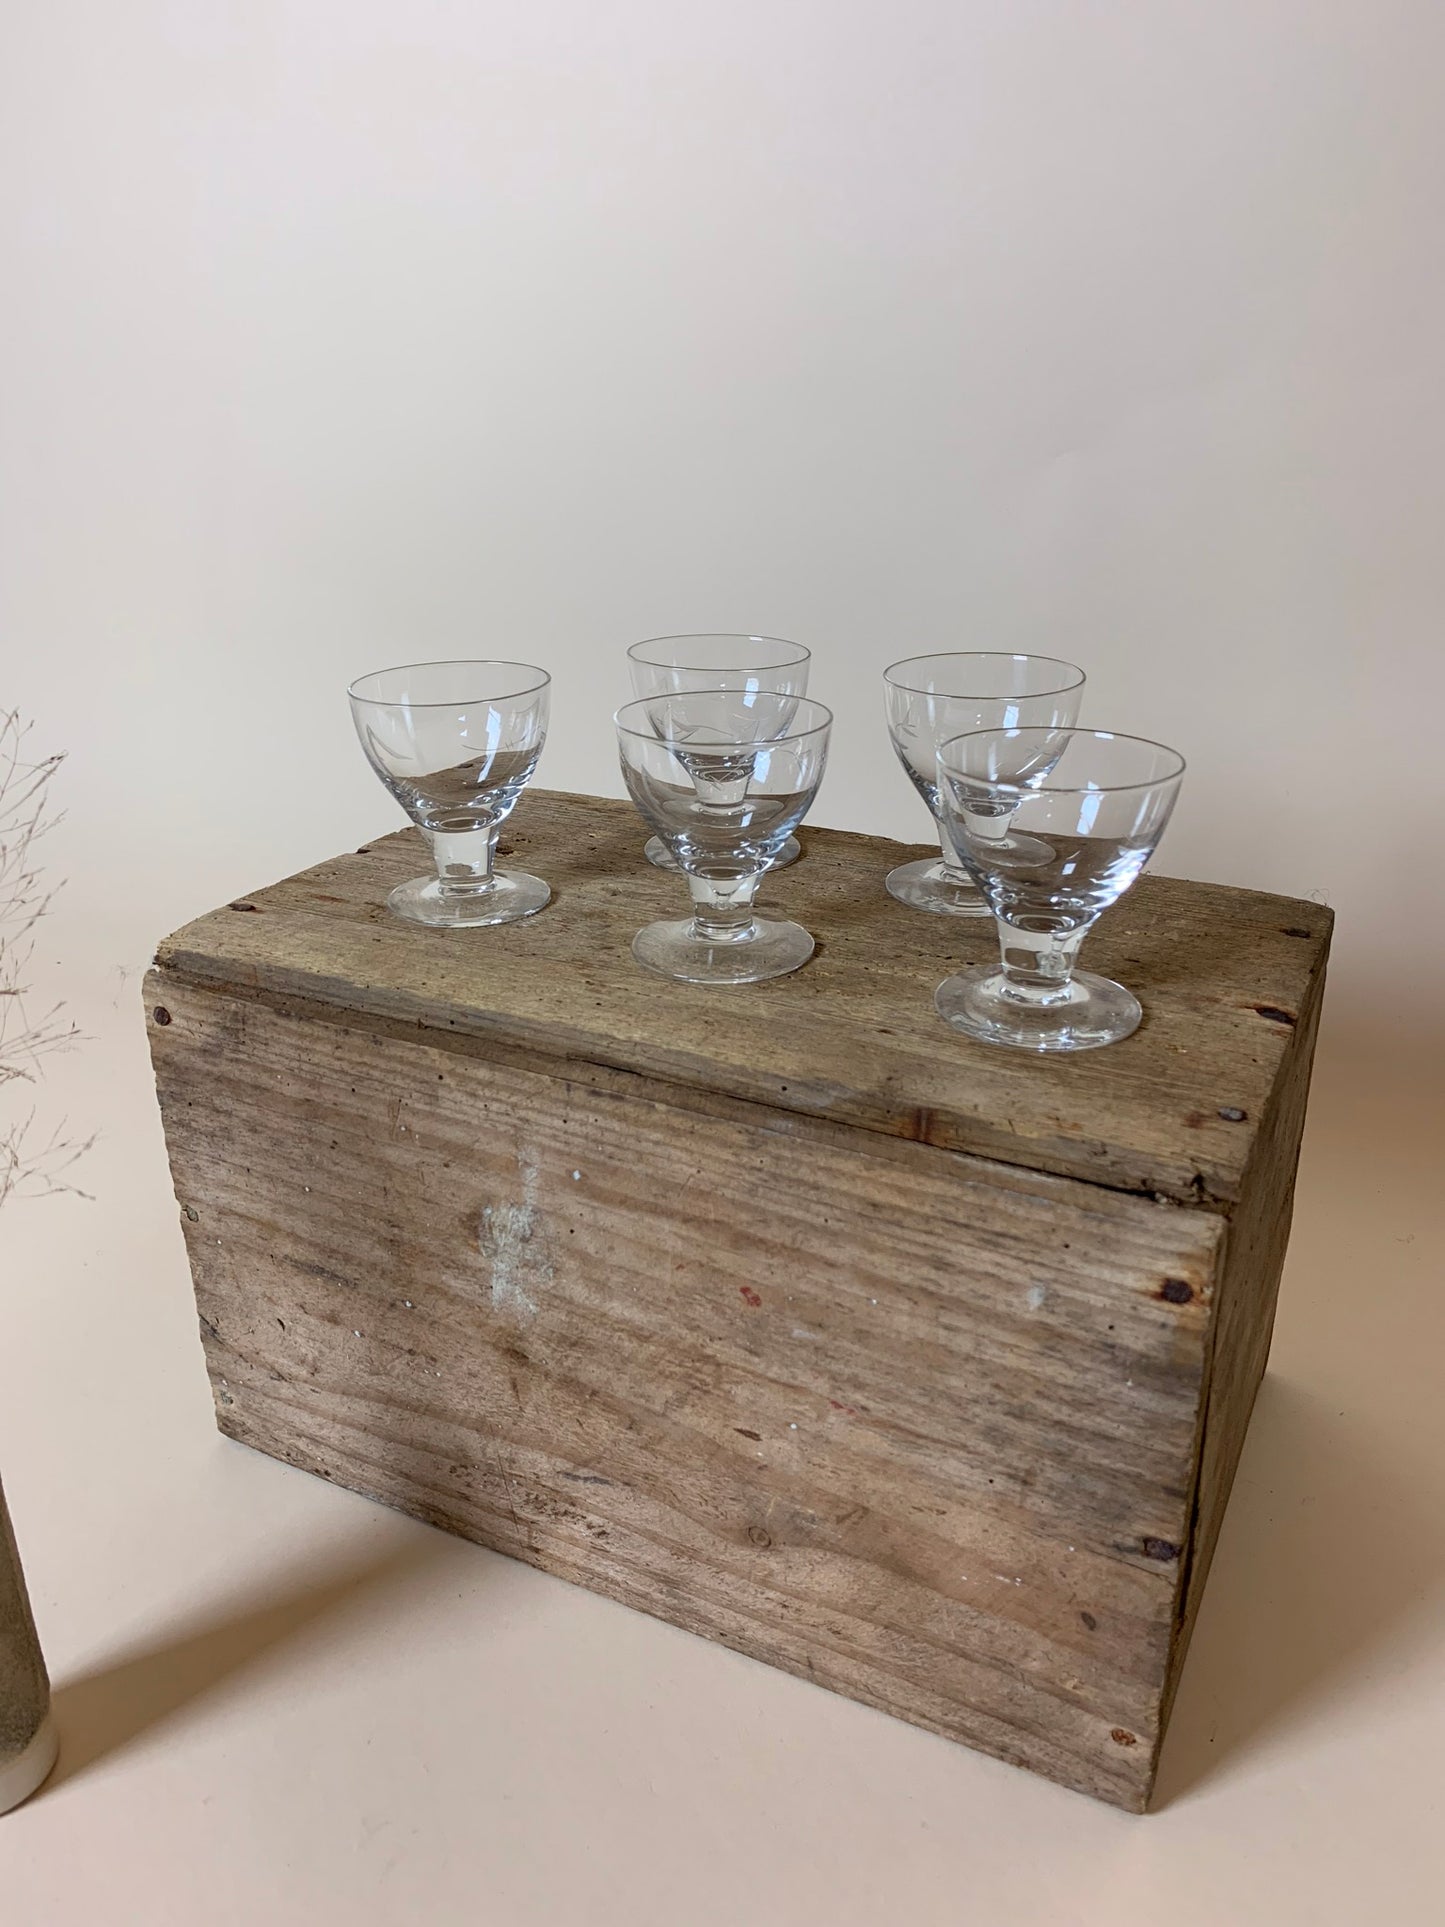 5 kleine feine Gläser - zusammen verkauft, der Preis gilt für alle 5